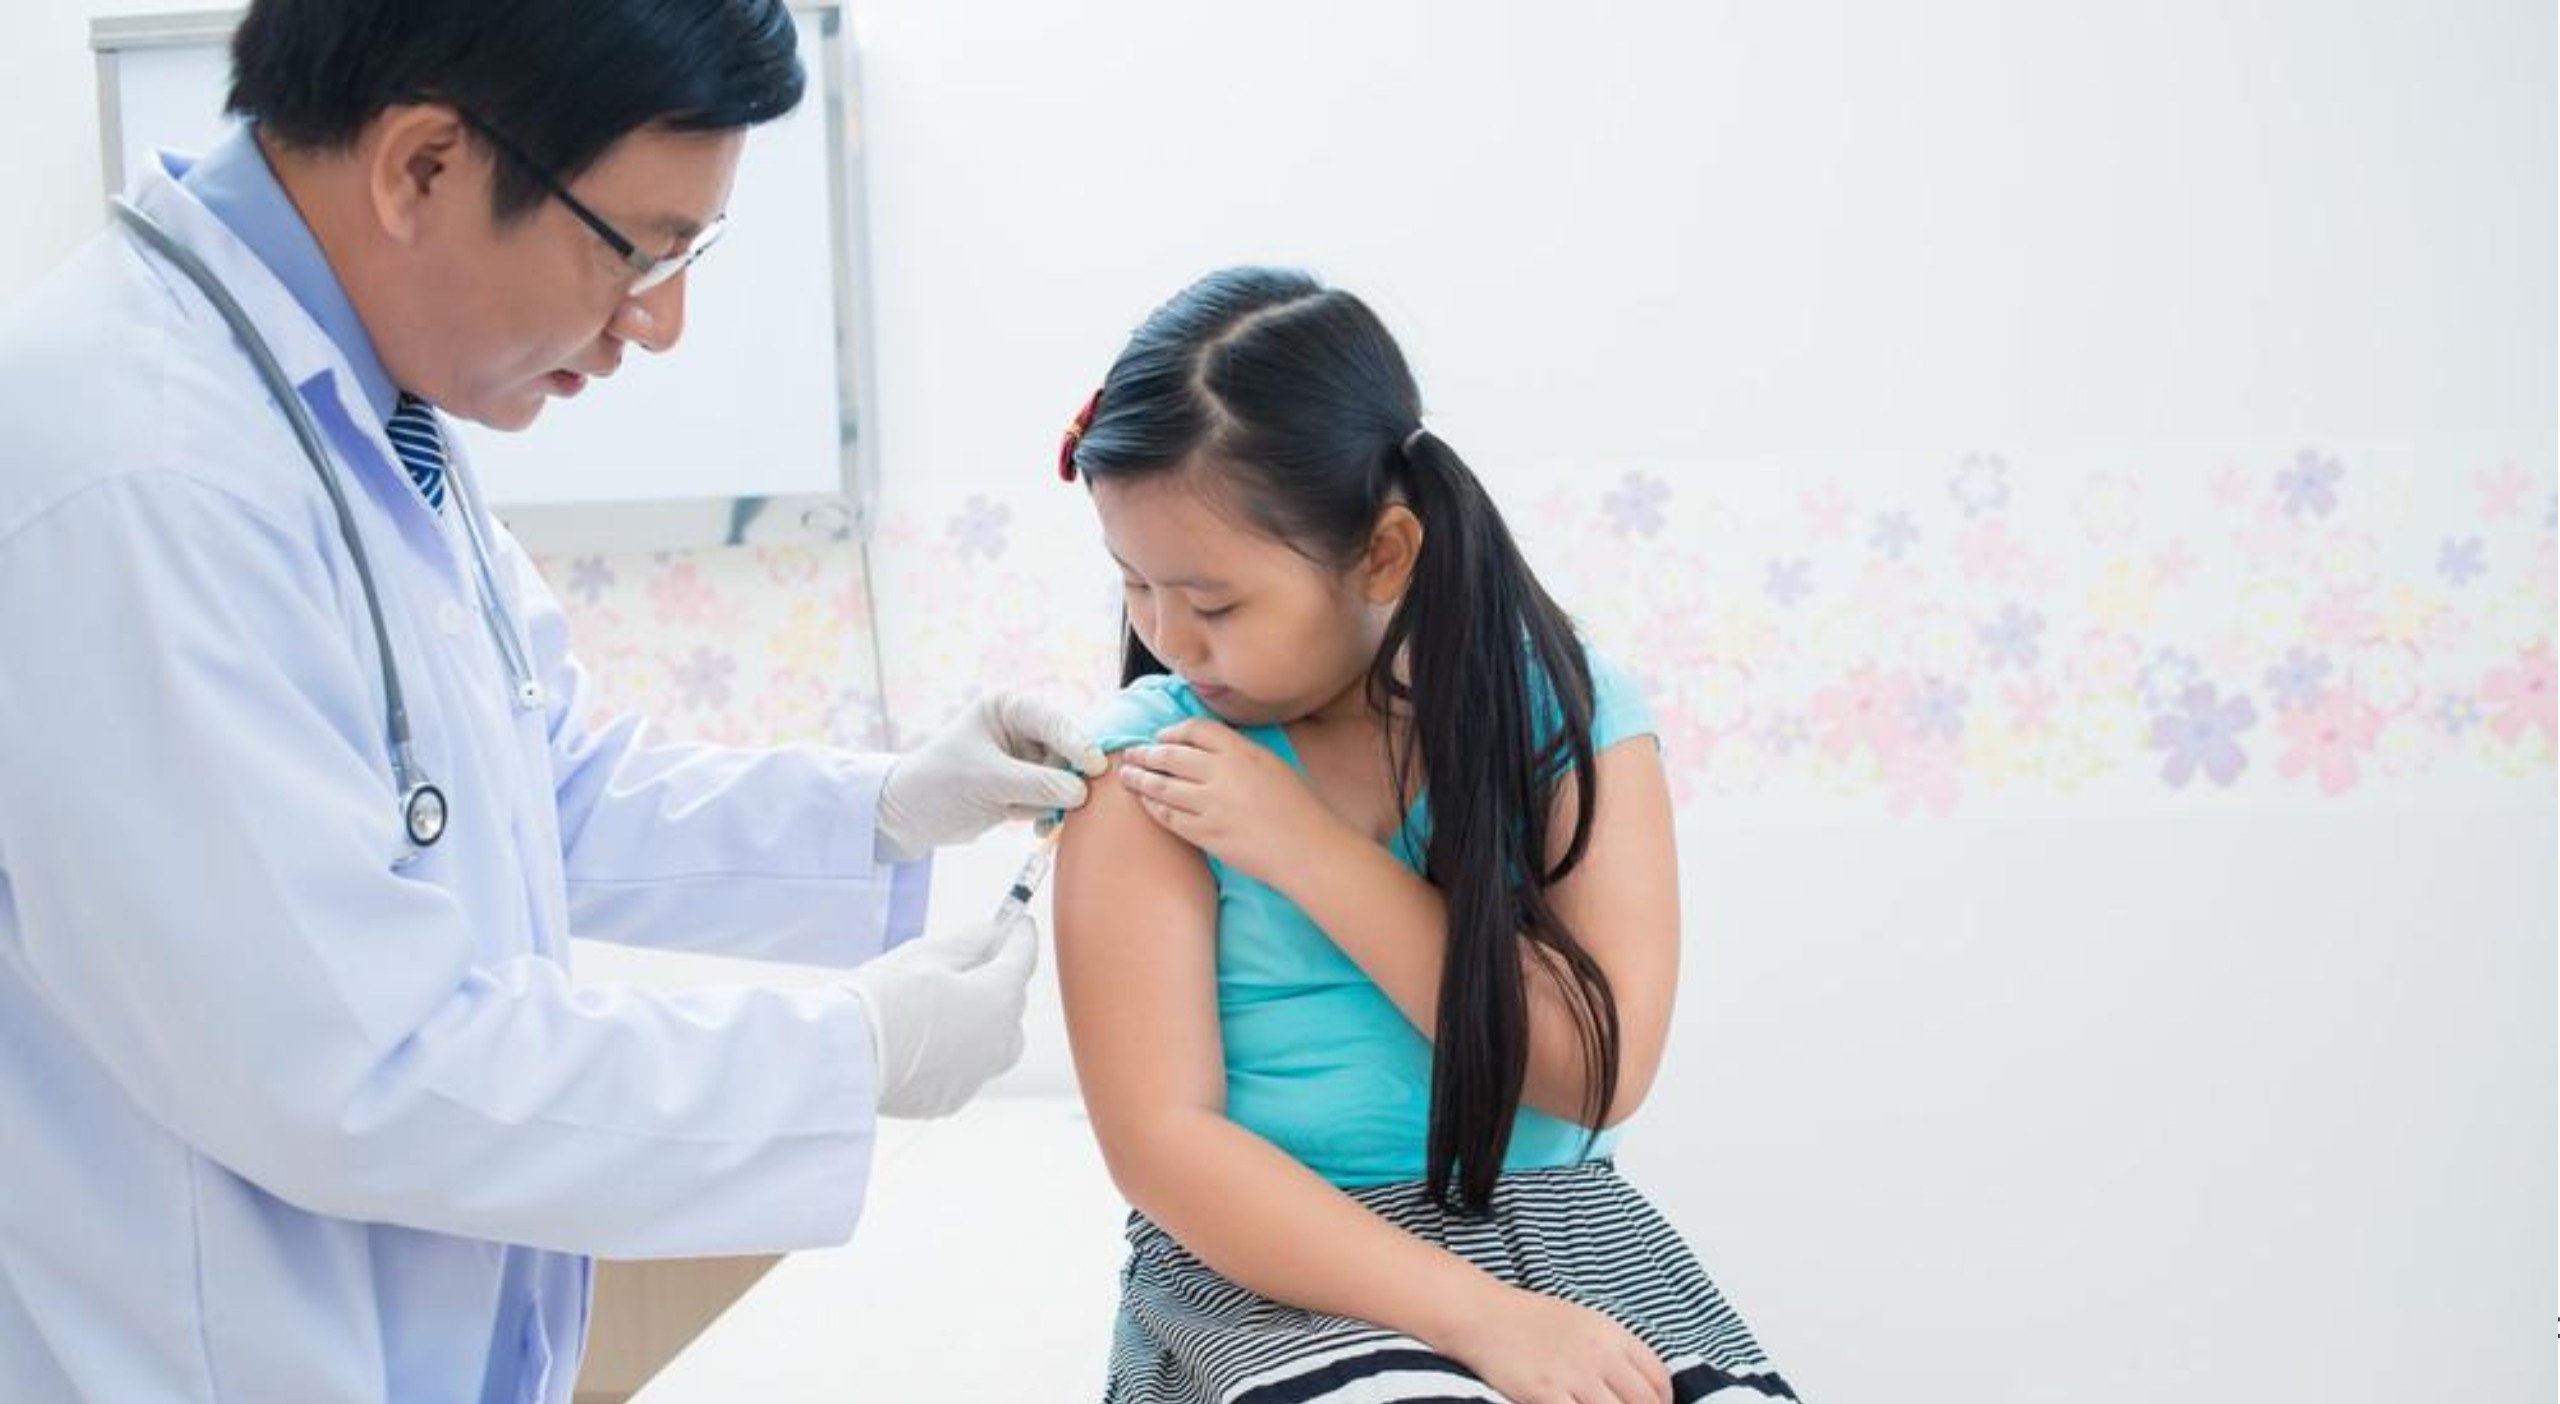 Tiêm vaccine là biện pháp hiệu quả để phòng bệnh cho trẻ em - 1